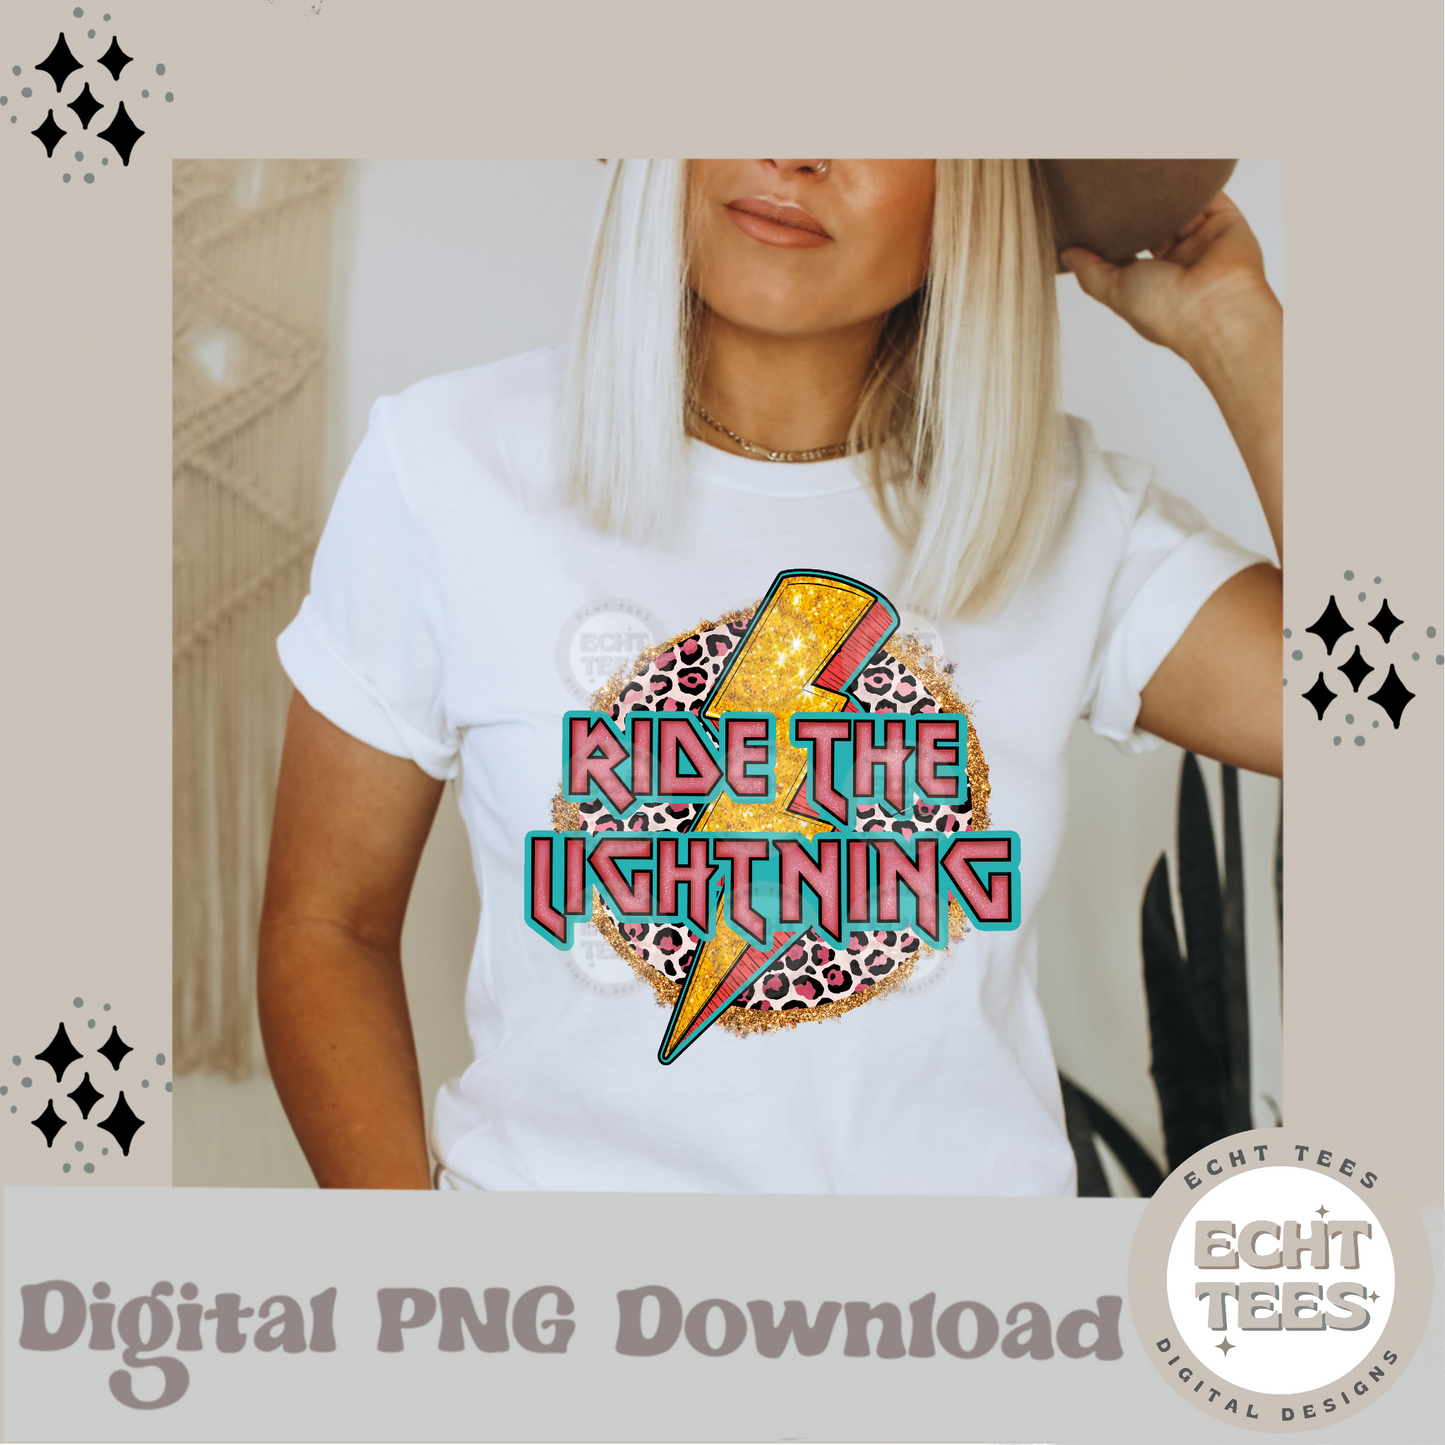 Ride the Lightning PNG Digital Download